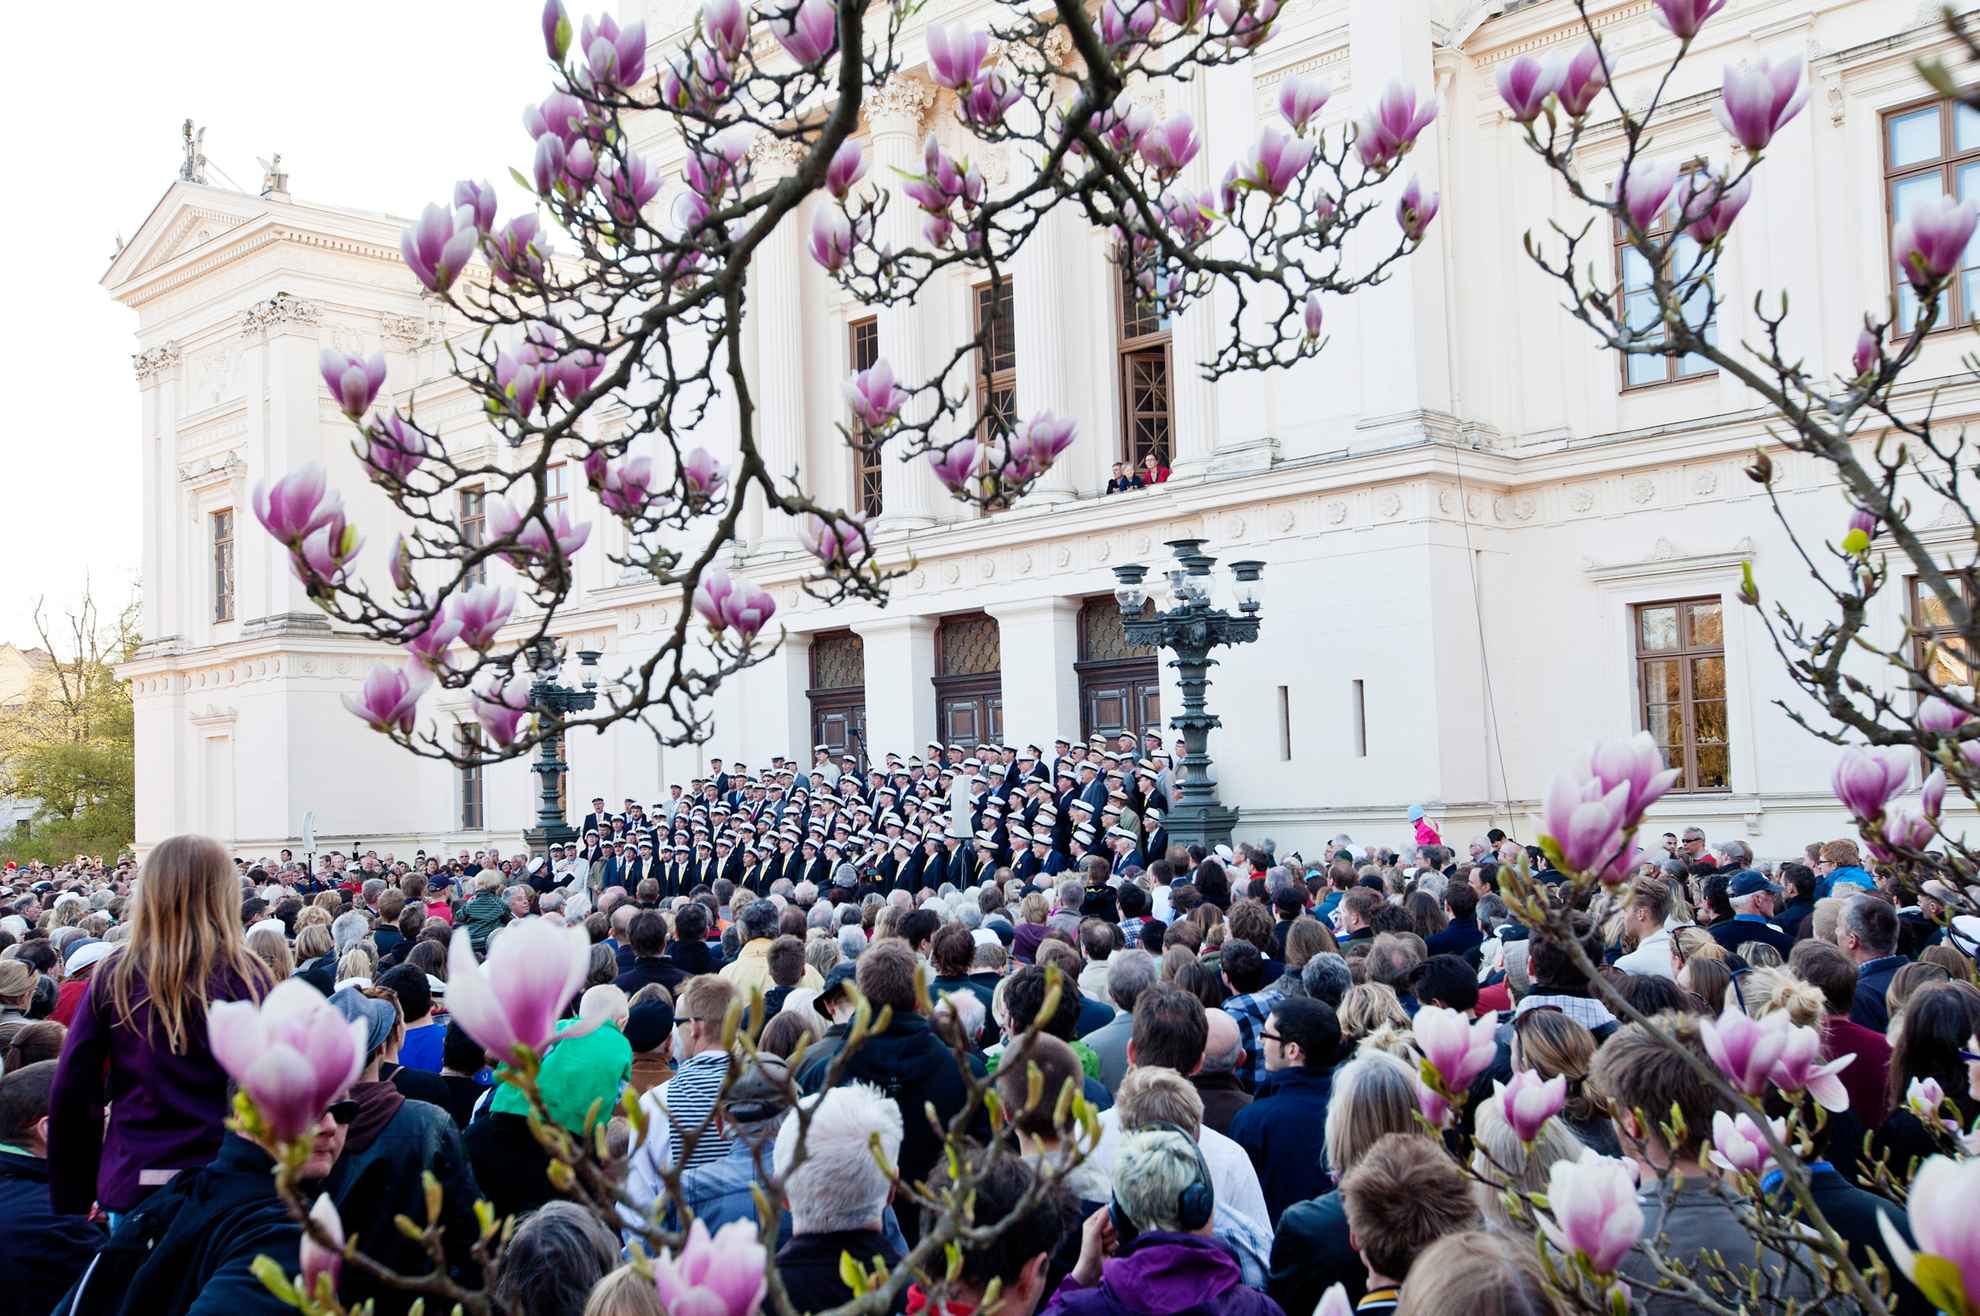 Studenten stehen vor dem Eingang eines Gebäutes der Lund Universität und singen. Viele Zuschauer stehen daneben.